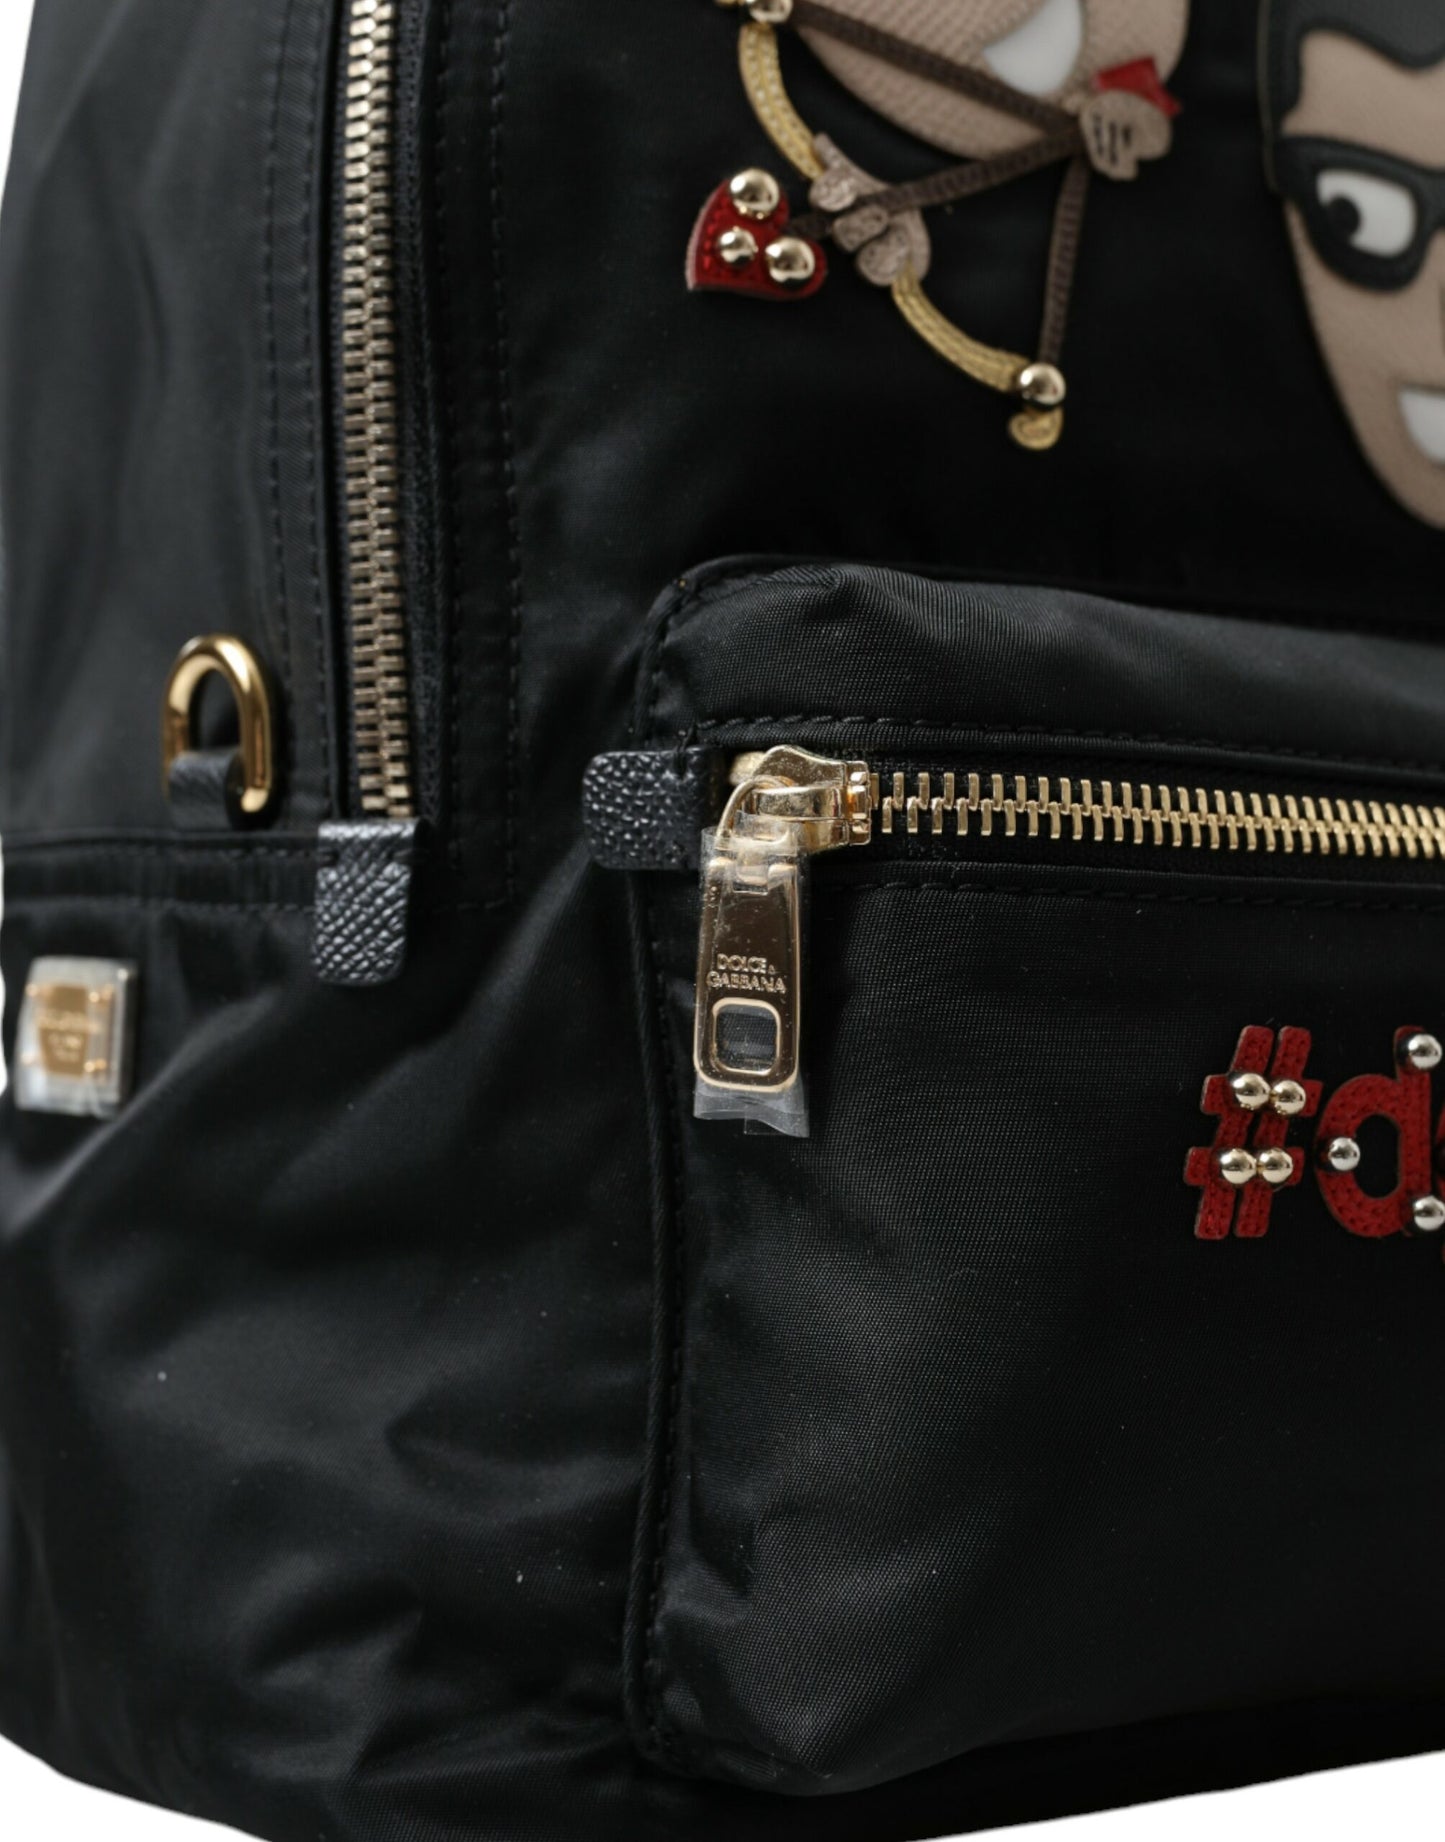 Dolce & gabbana embellished black backpack